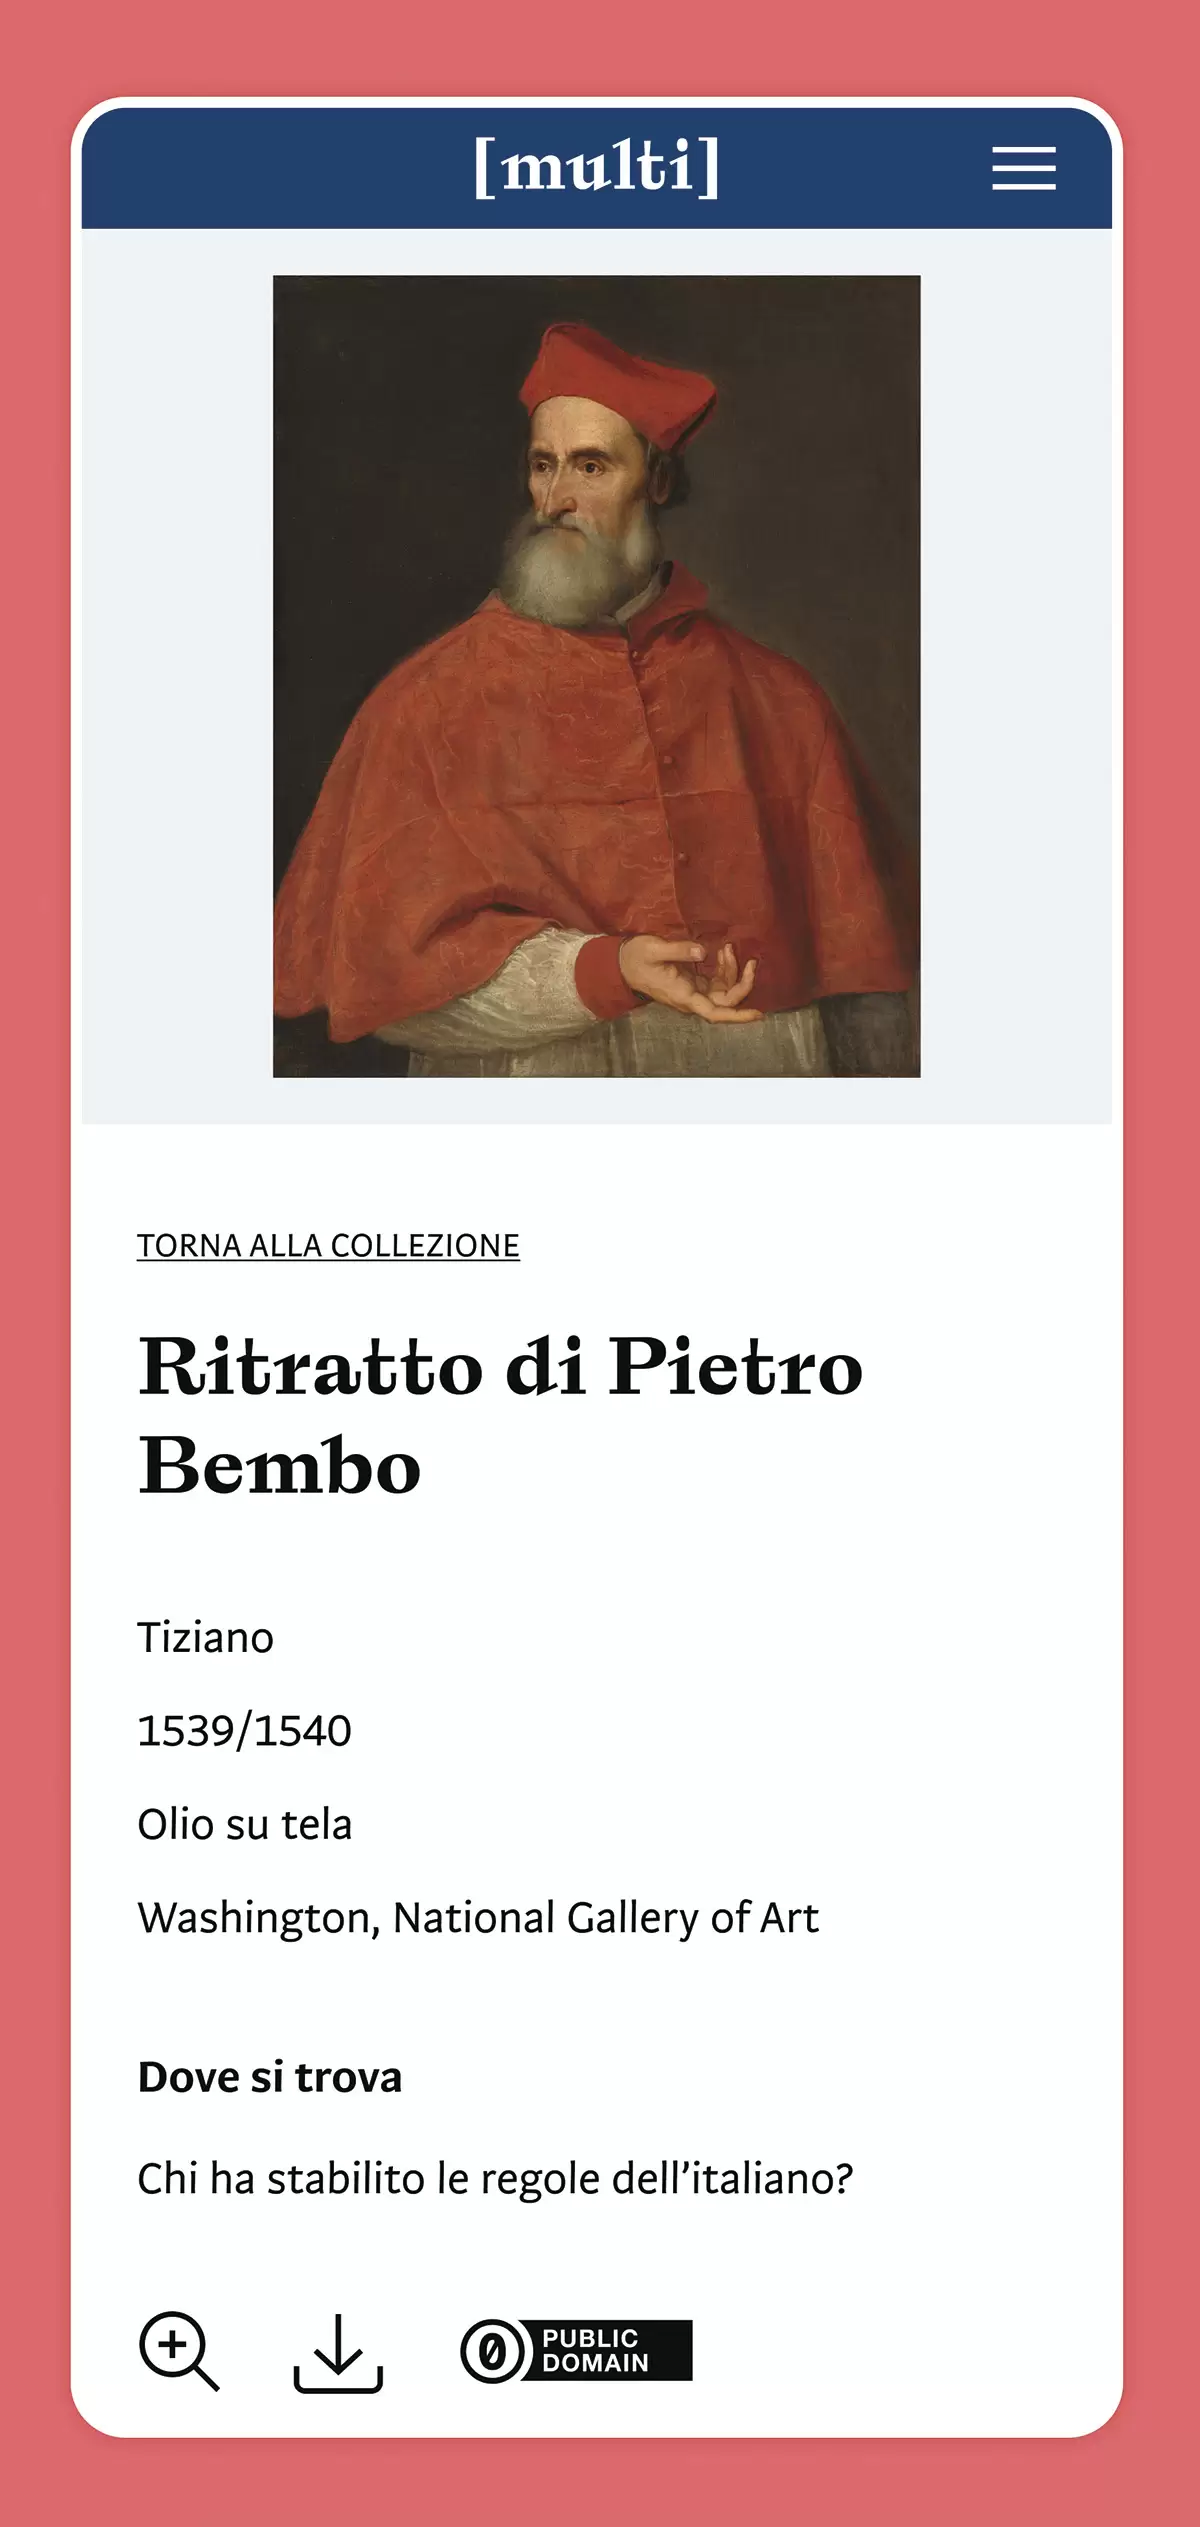 Multi collezione stampa, Ritratto di Petro Bembo